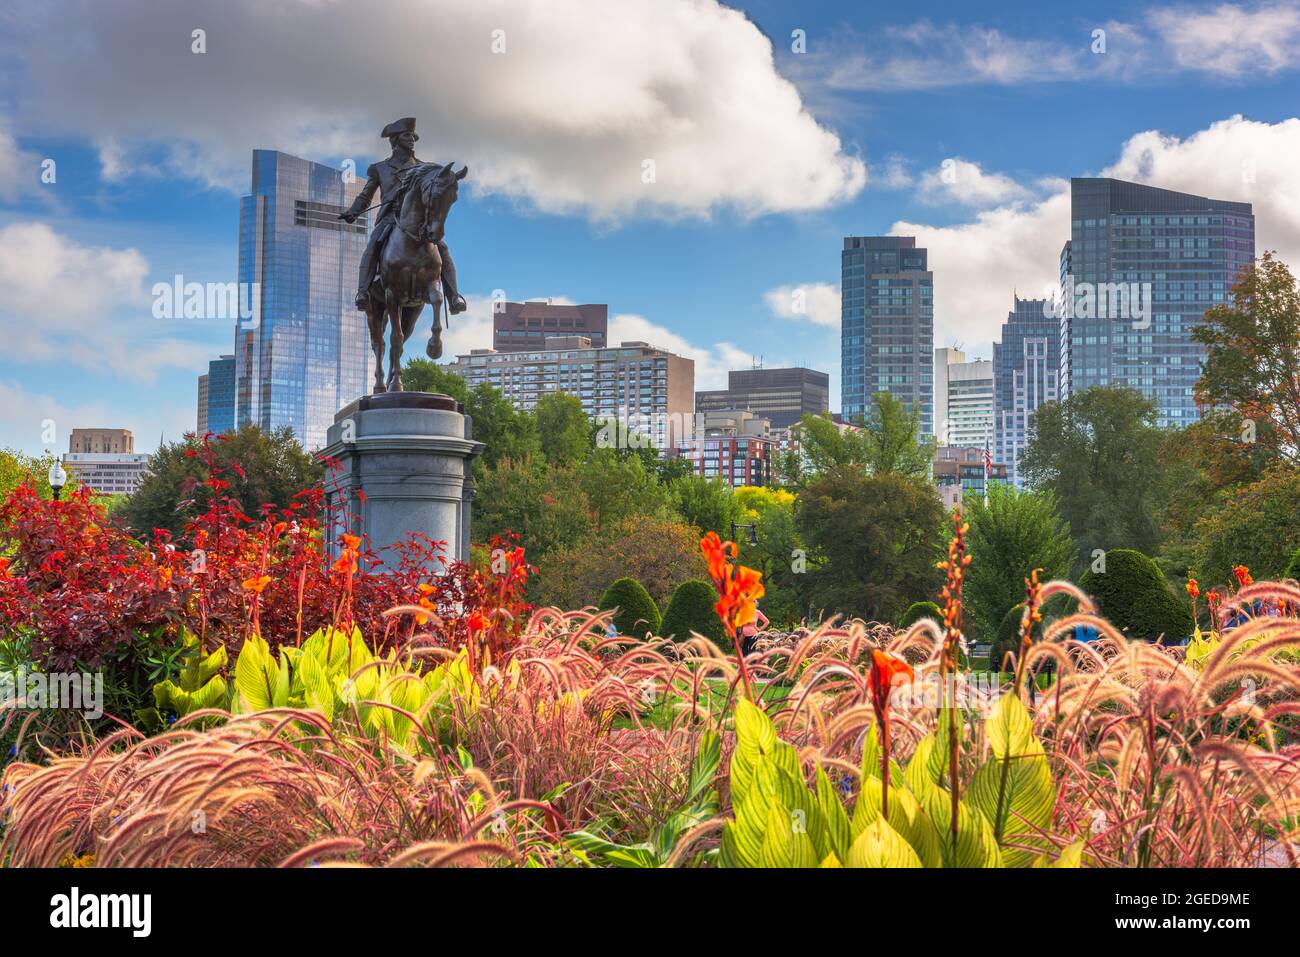 George Washington Monument at Public Garden in Boston, Massachusetts. Stock Photo